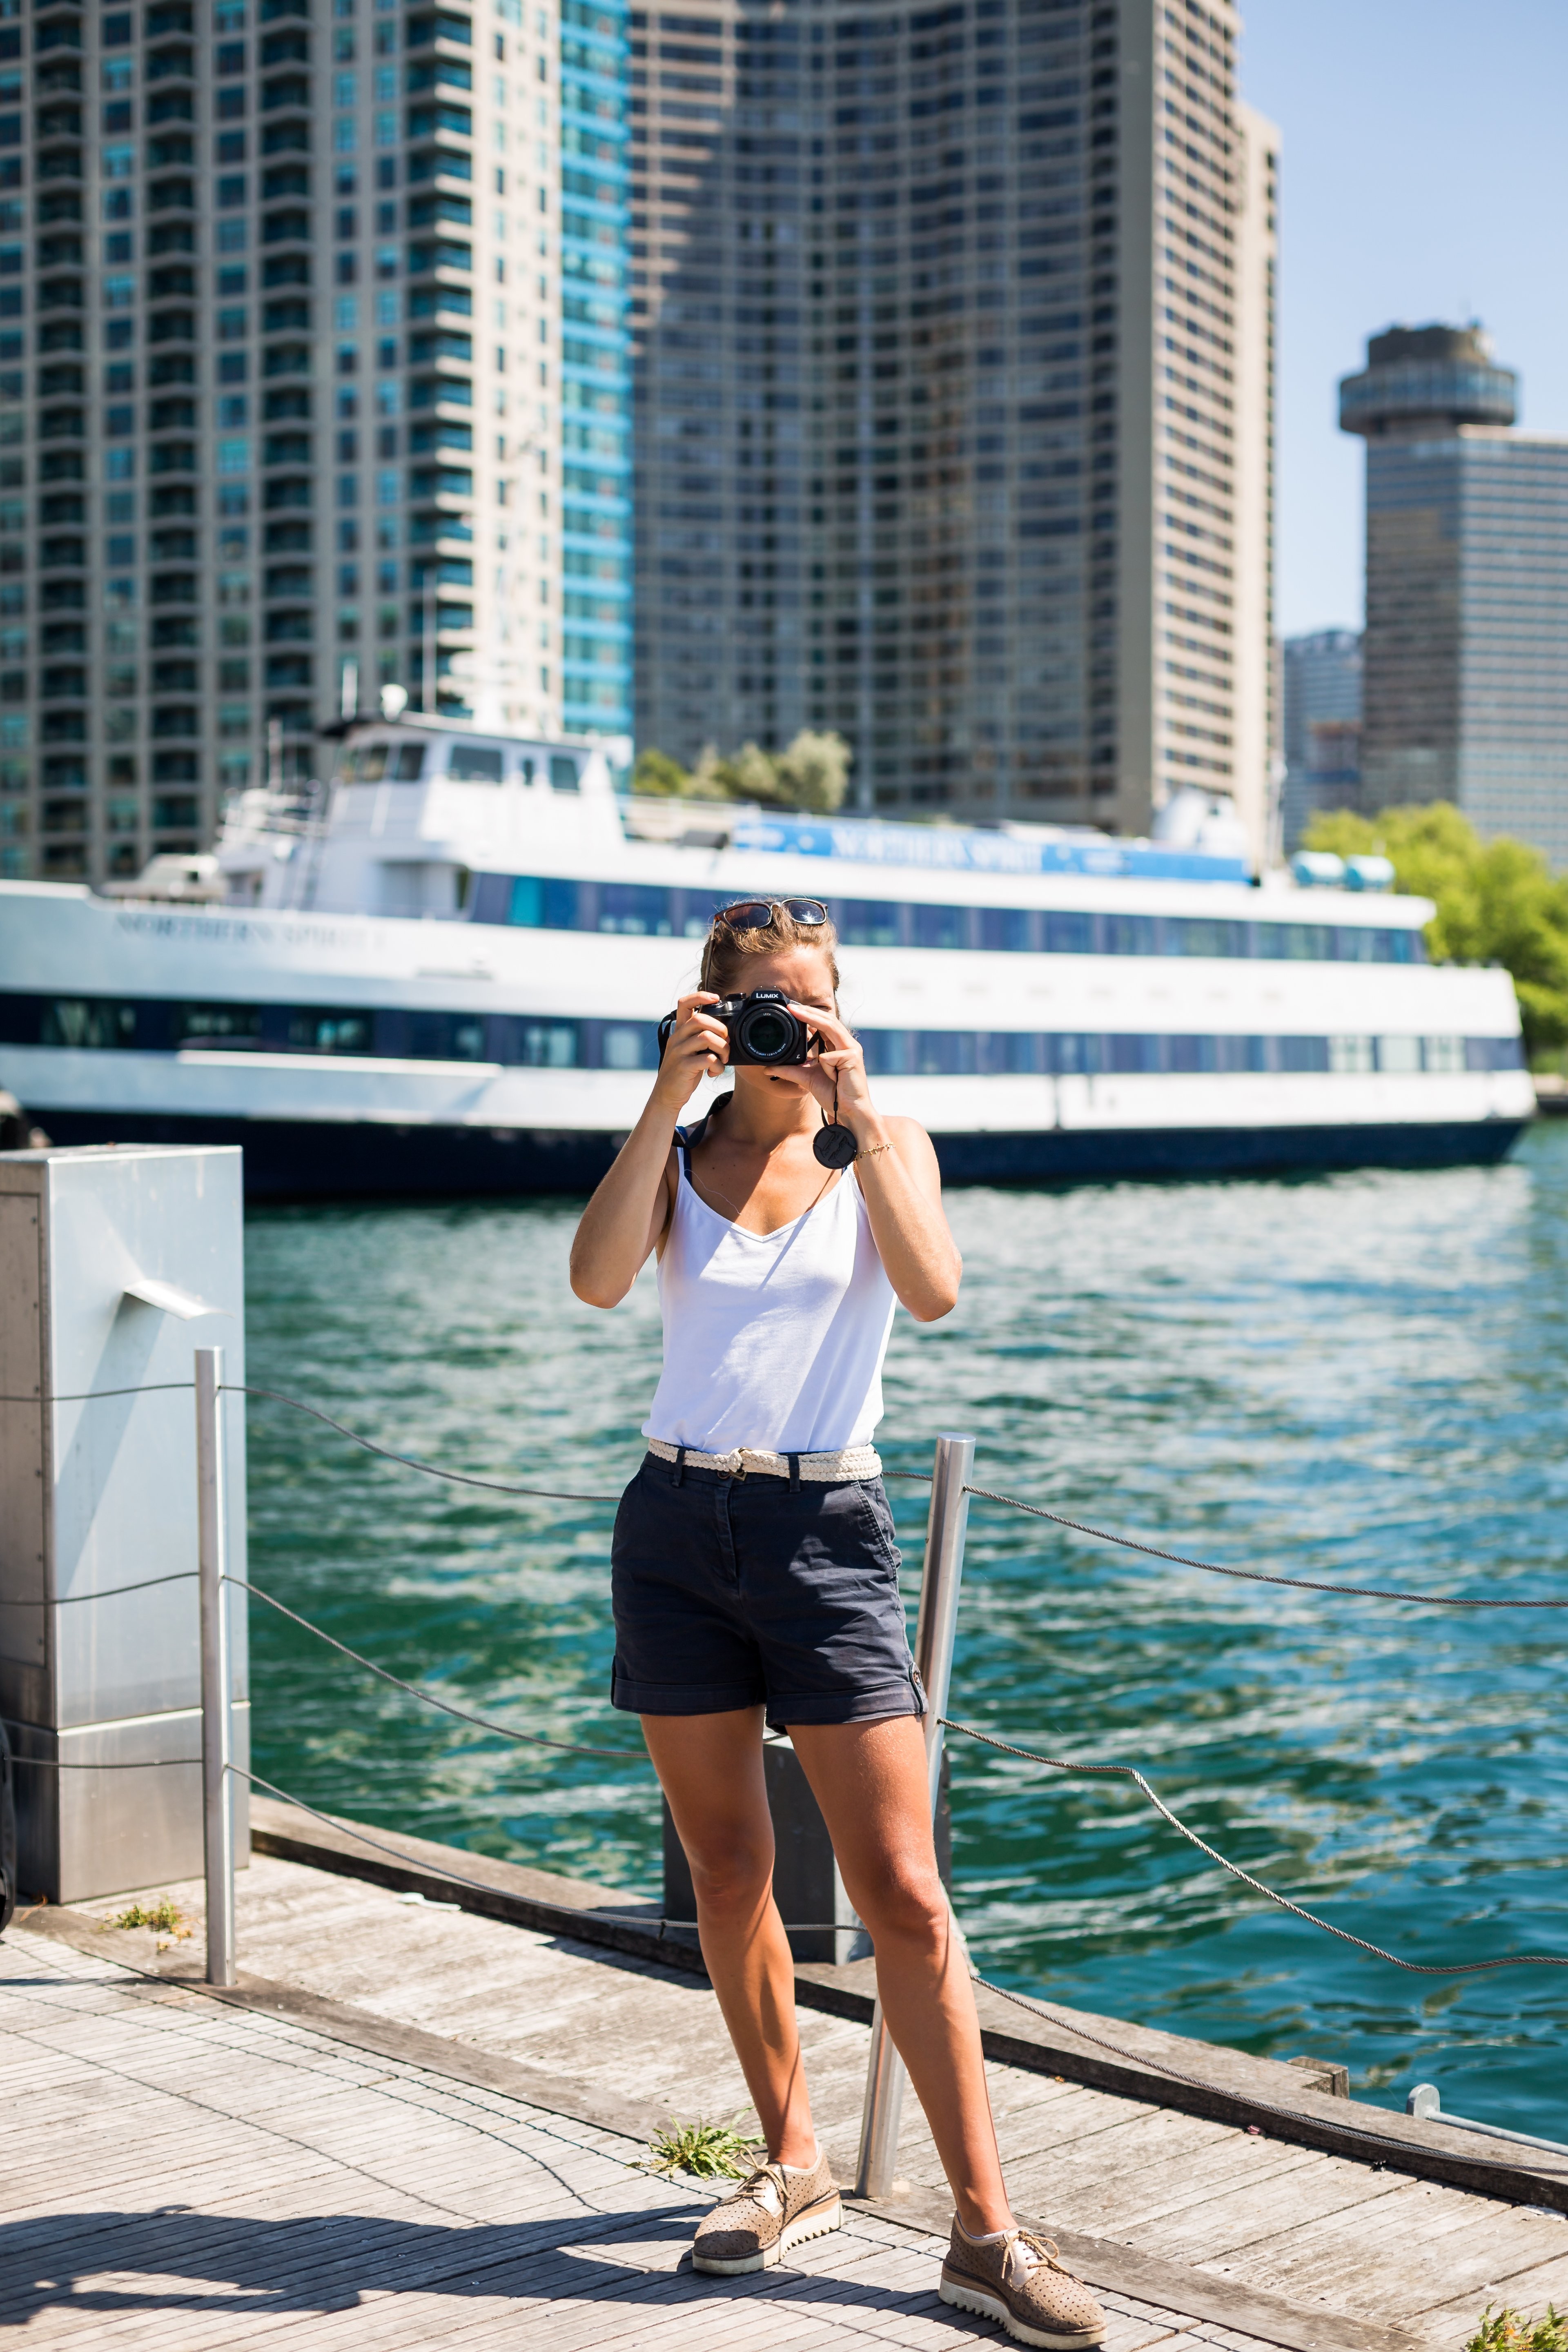 Une personne se tient près du bord de l eau et tient l appareil photo pour prendre une photo 